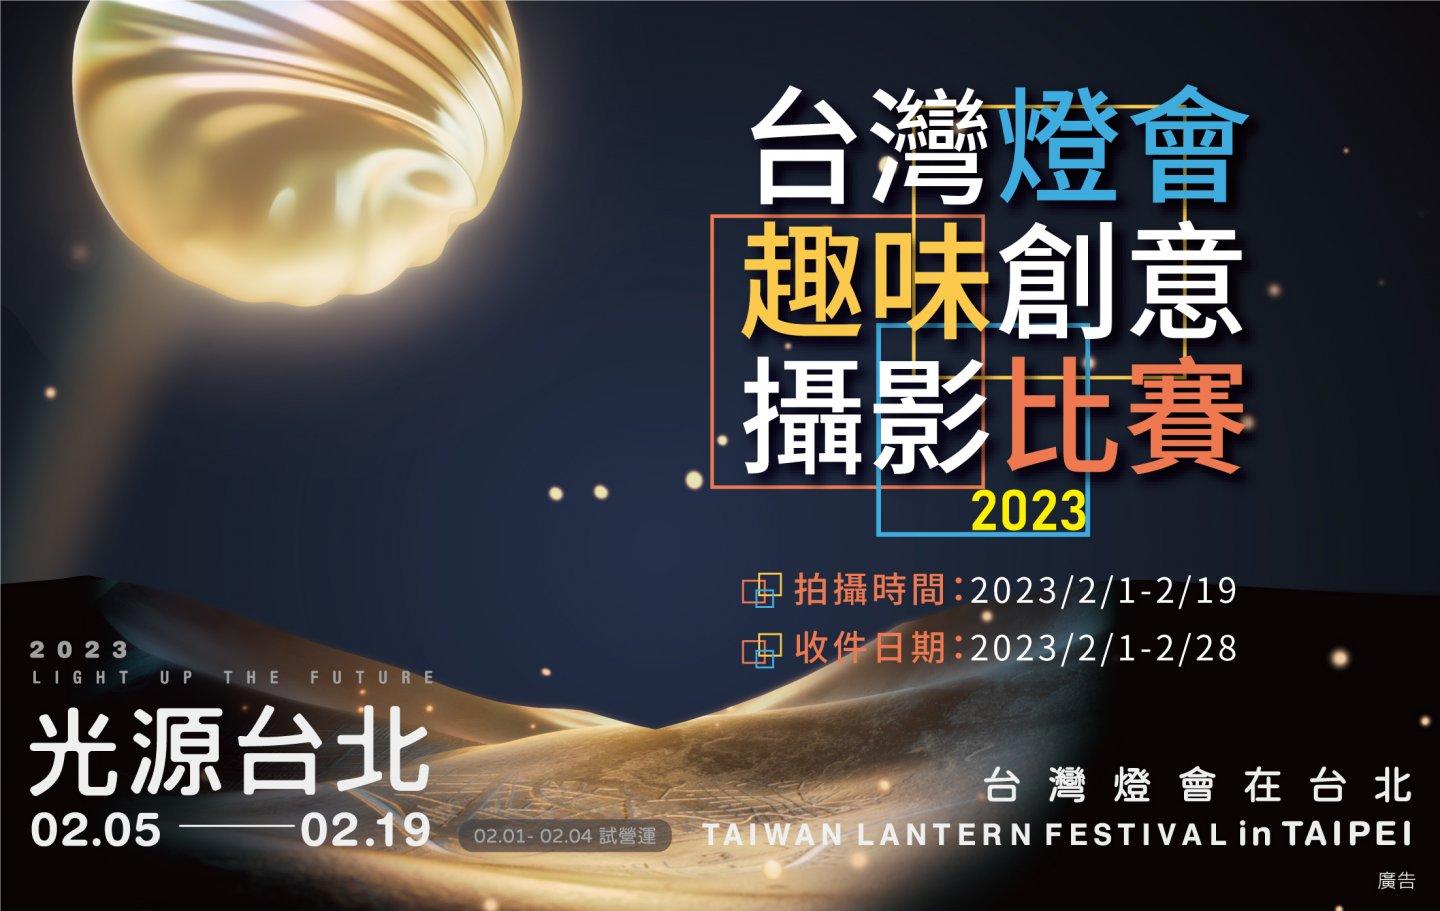 2023台灣燈會在台北 趣味創意攝影比賽即將起跑！ 剎那即永恆 2/1用拍照來記憶那希望之光